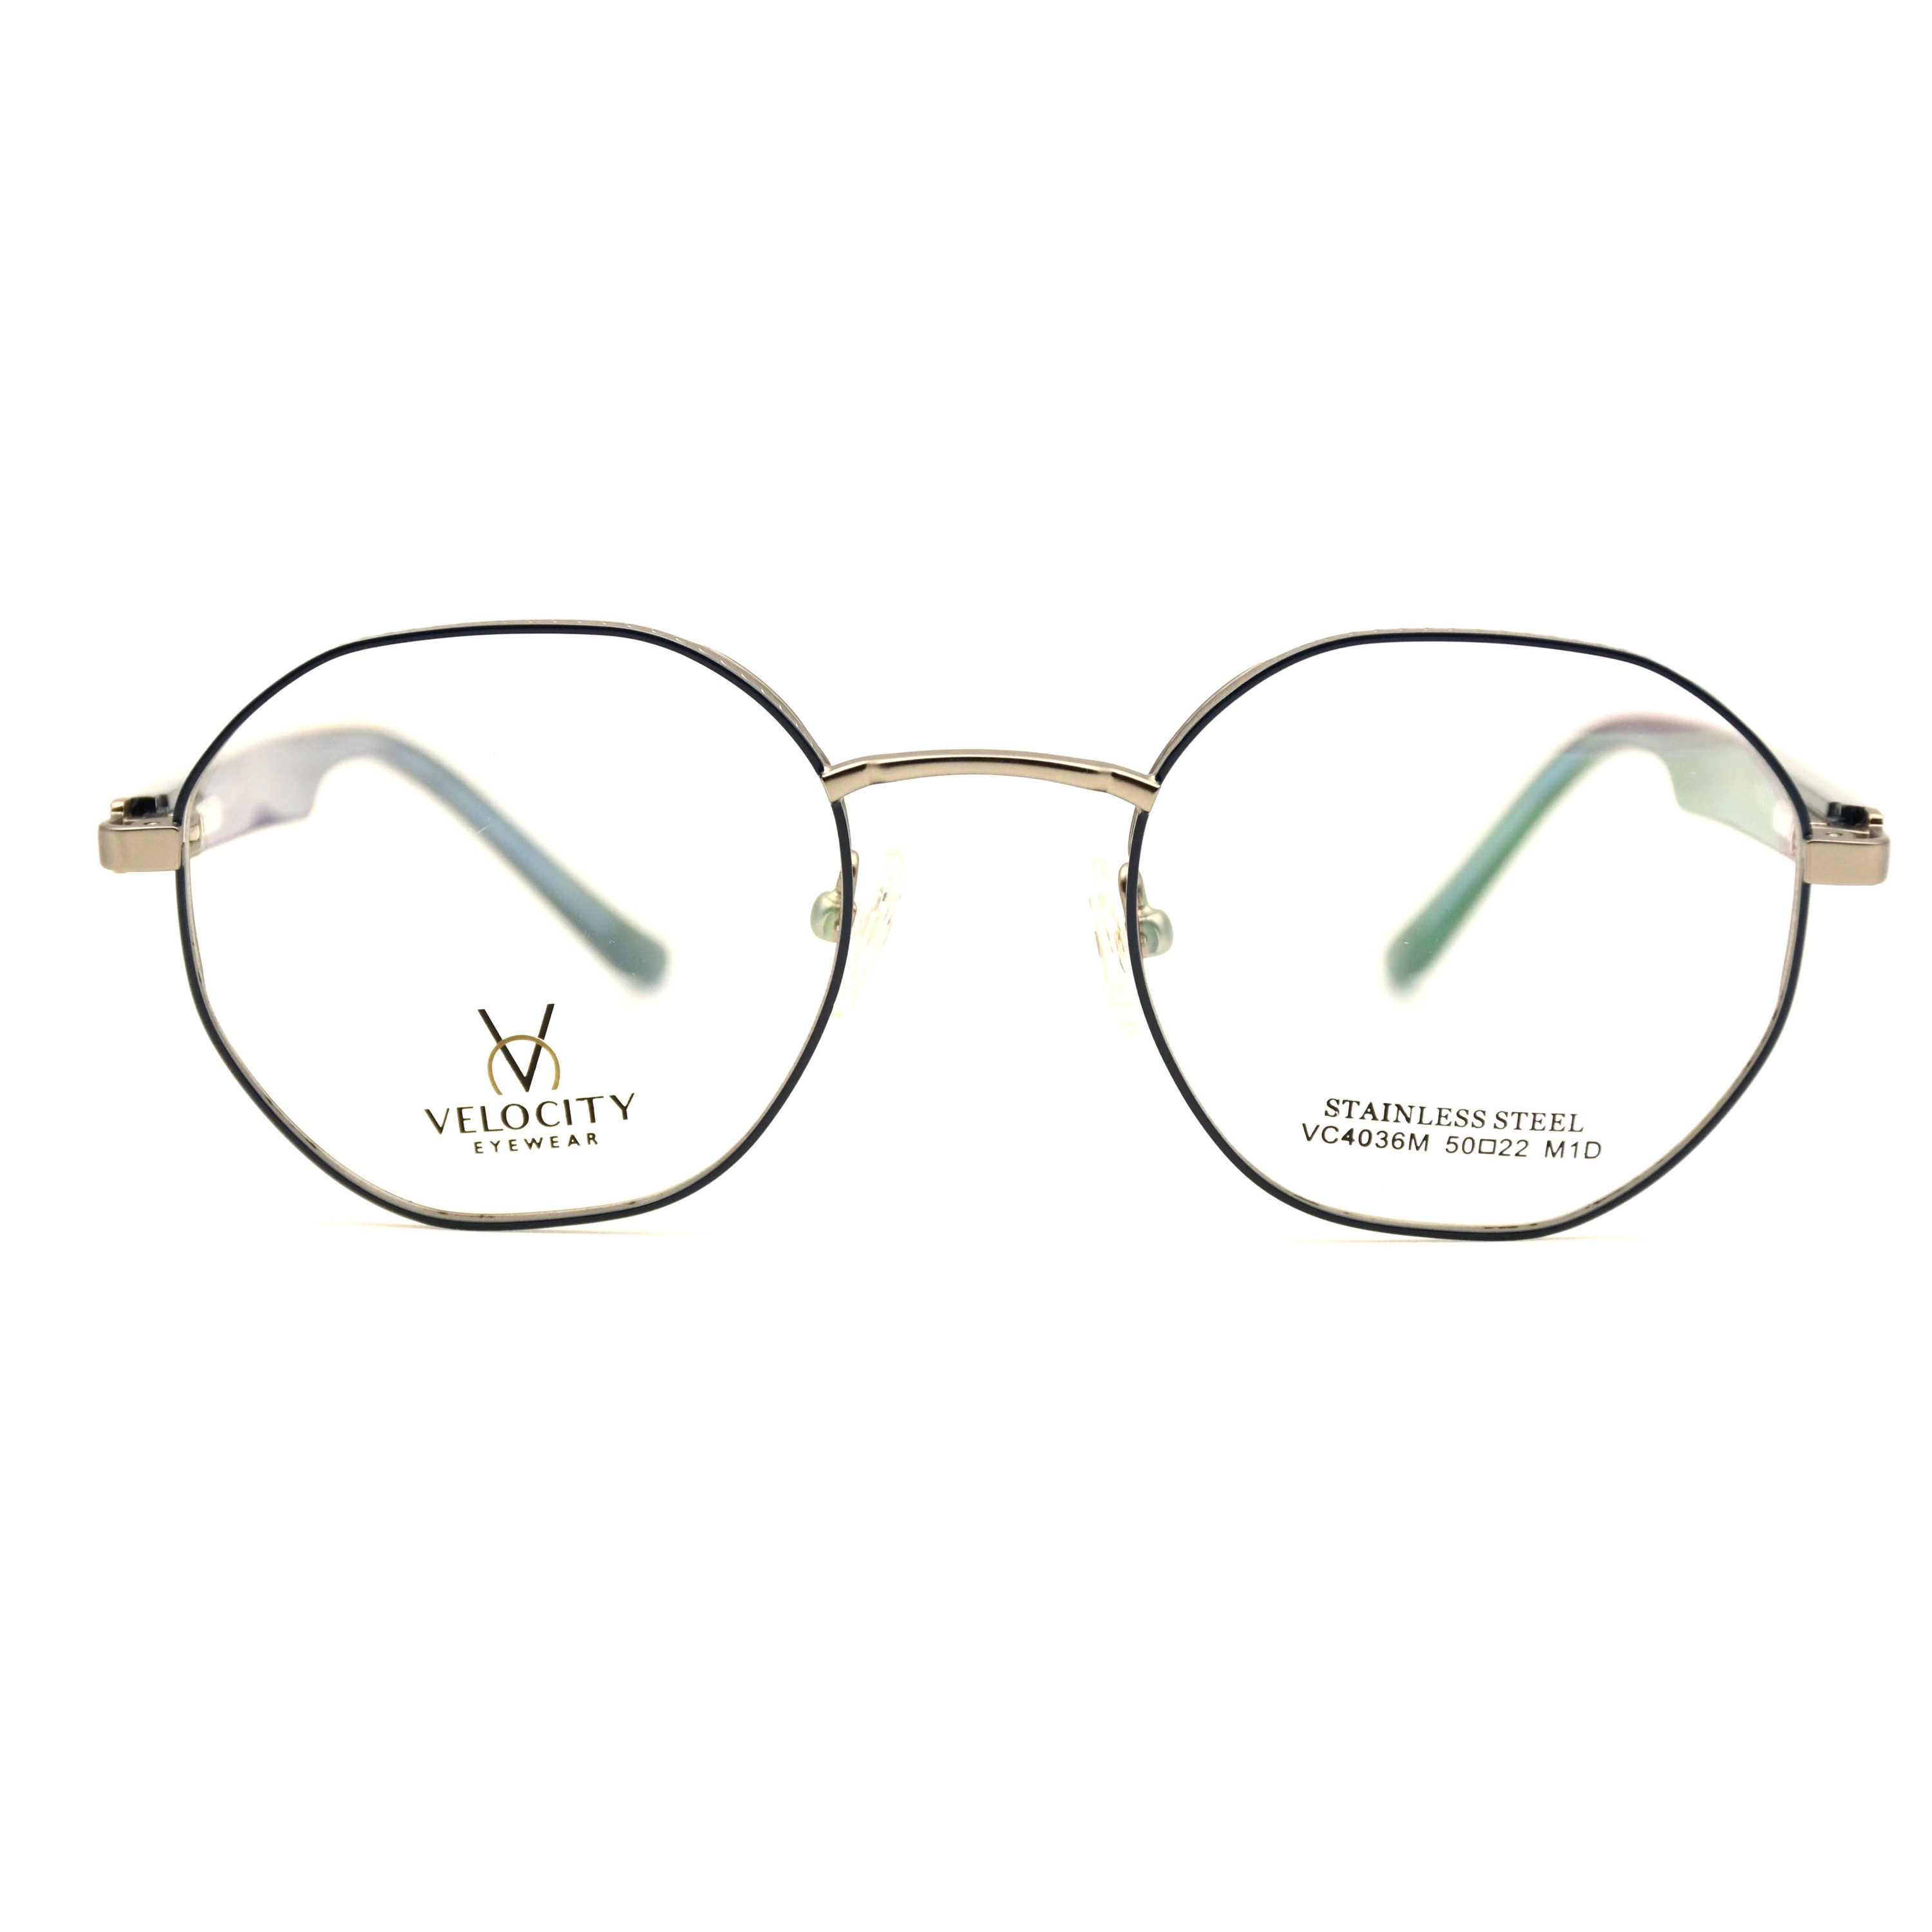 Velocity Full Rim Eyeglasses - 4036-M1D